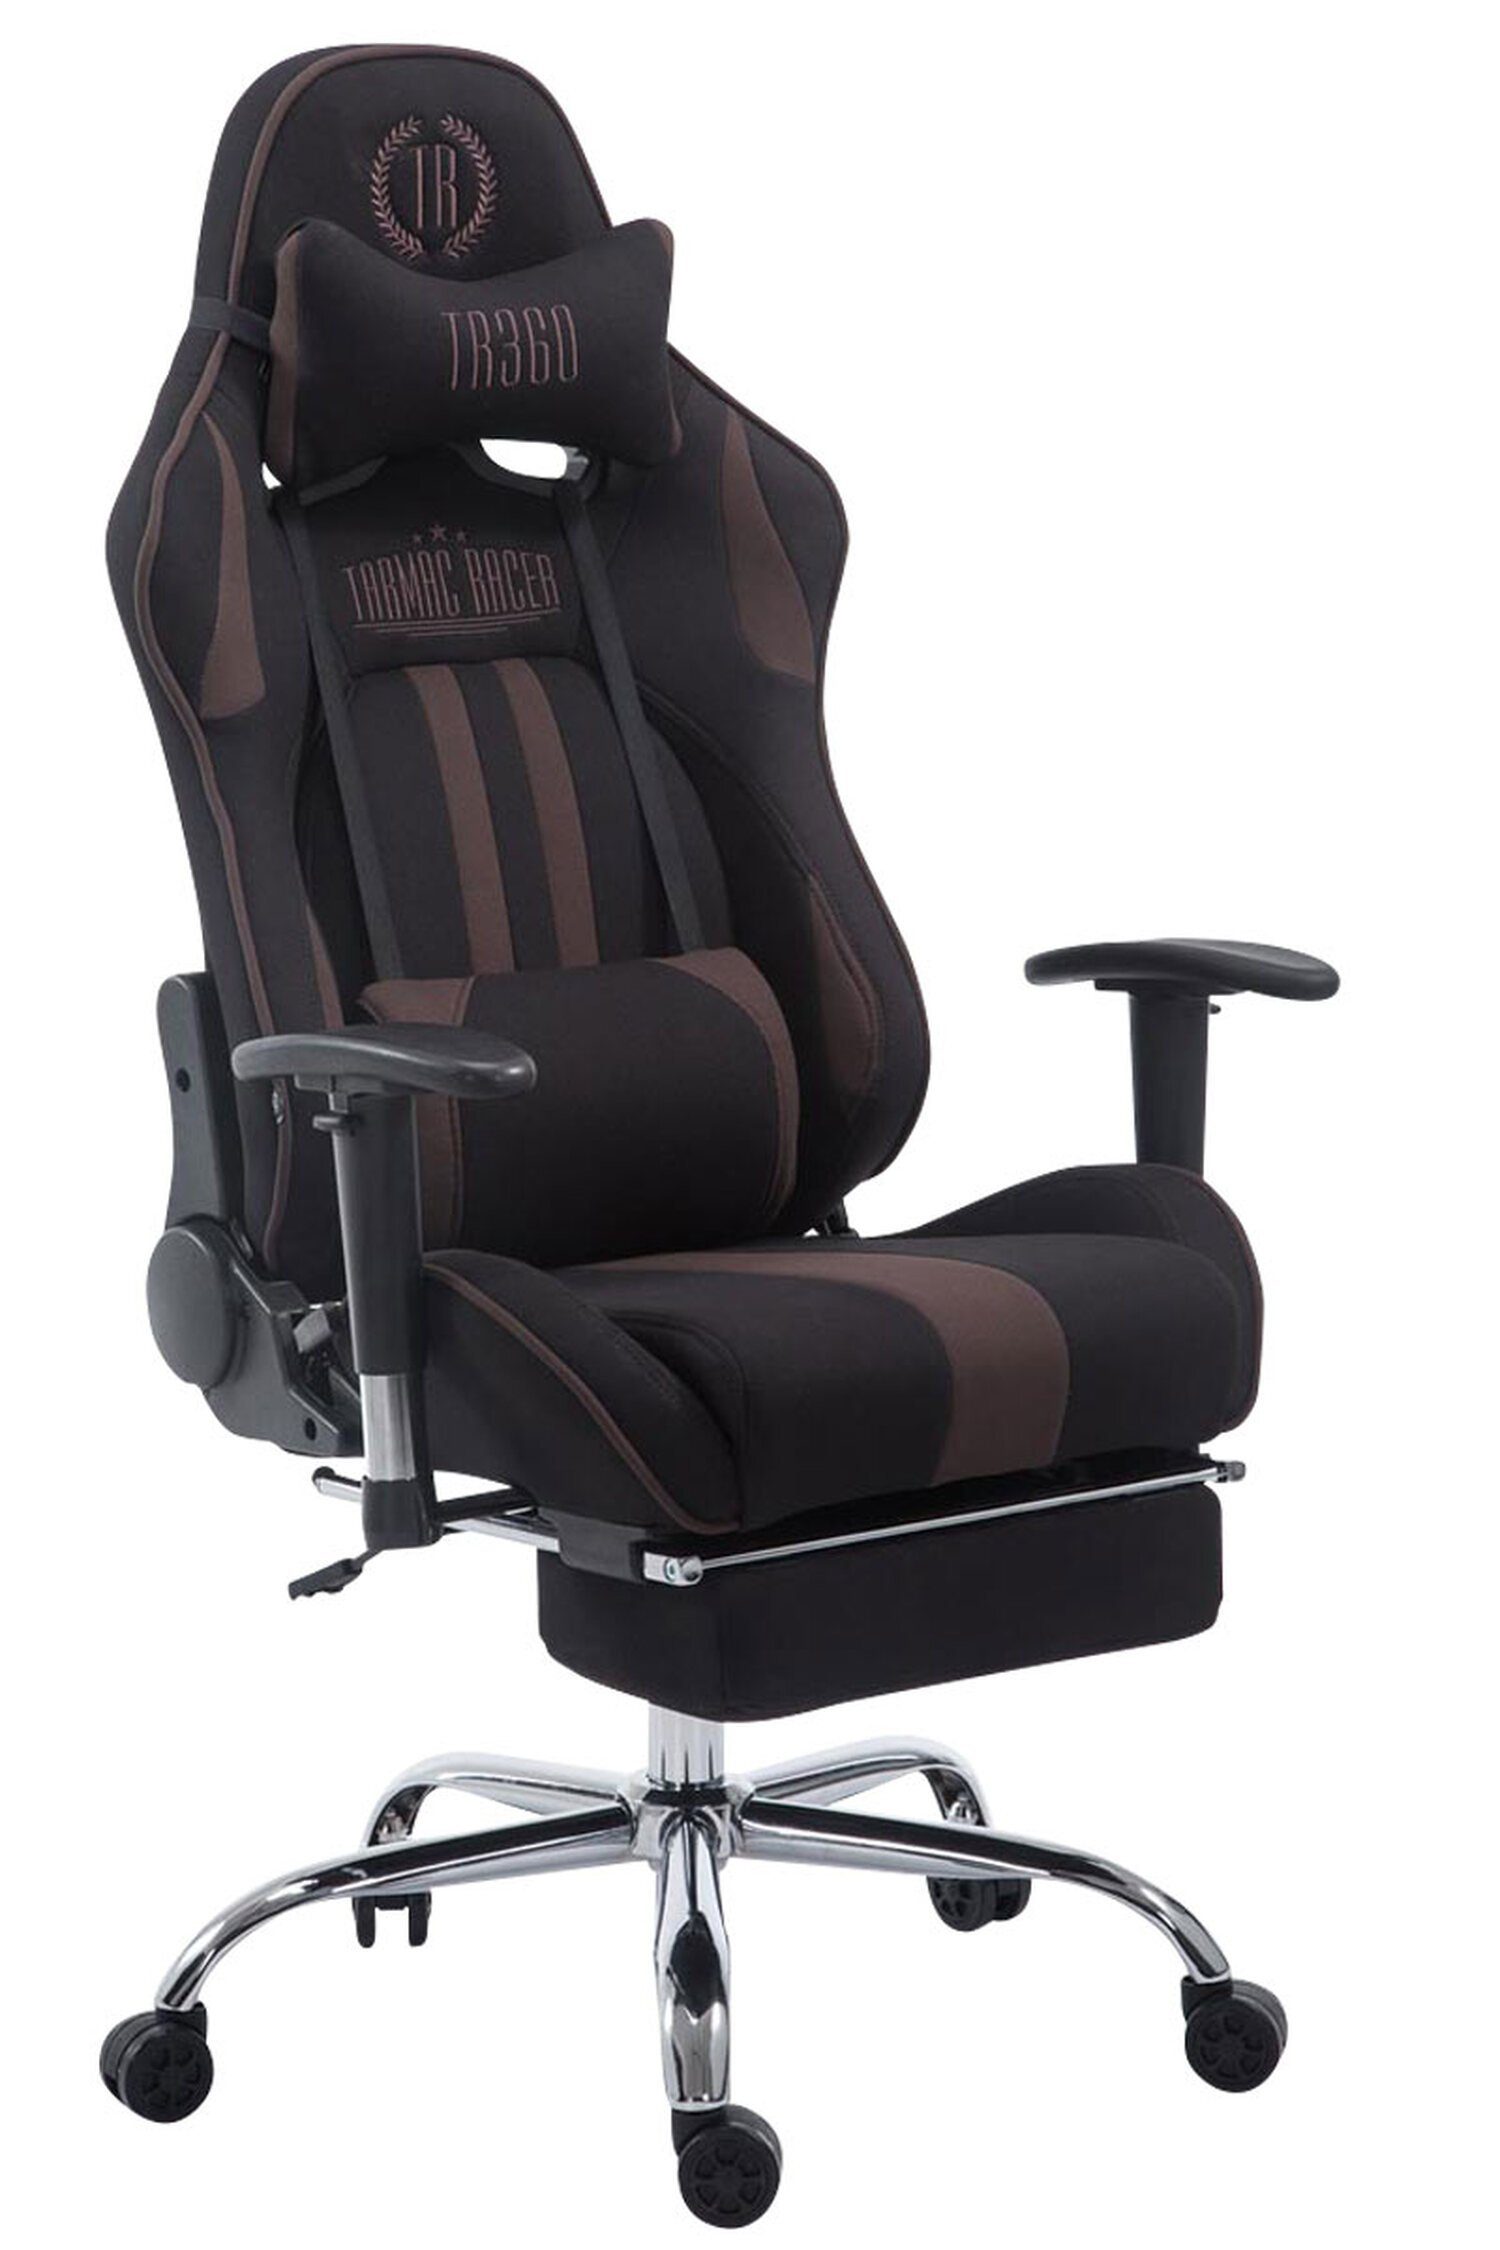 TPFLiving Gaming-Stuhl Limitless mit bequemer Rückenlehne - höhenverstellbar und 360° drehbar (Schreibtischstuhl, Drehstuhl, Gamingstuhl, Racingstuhl, Chefsessel), Gestell: Metall chrom - Sitzfläche: Stoff schwarz/braun